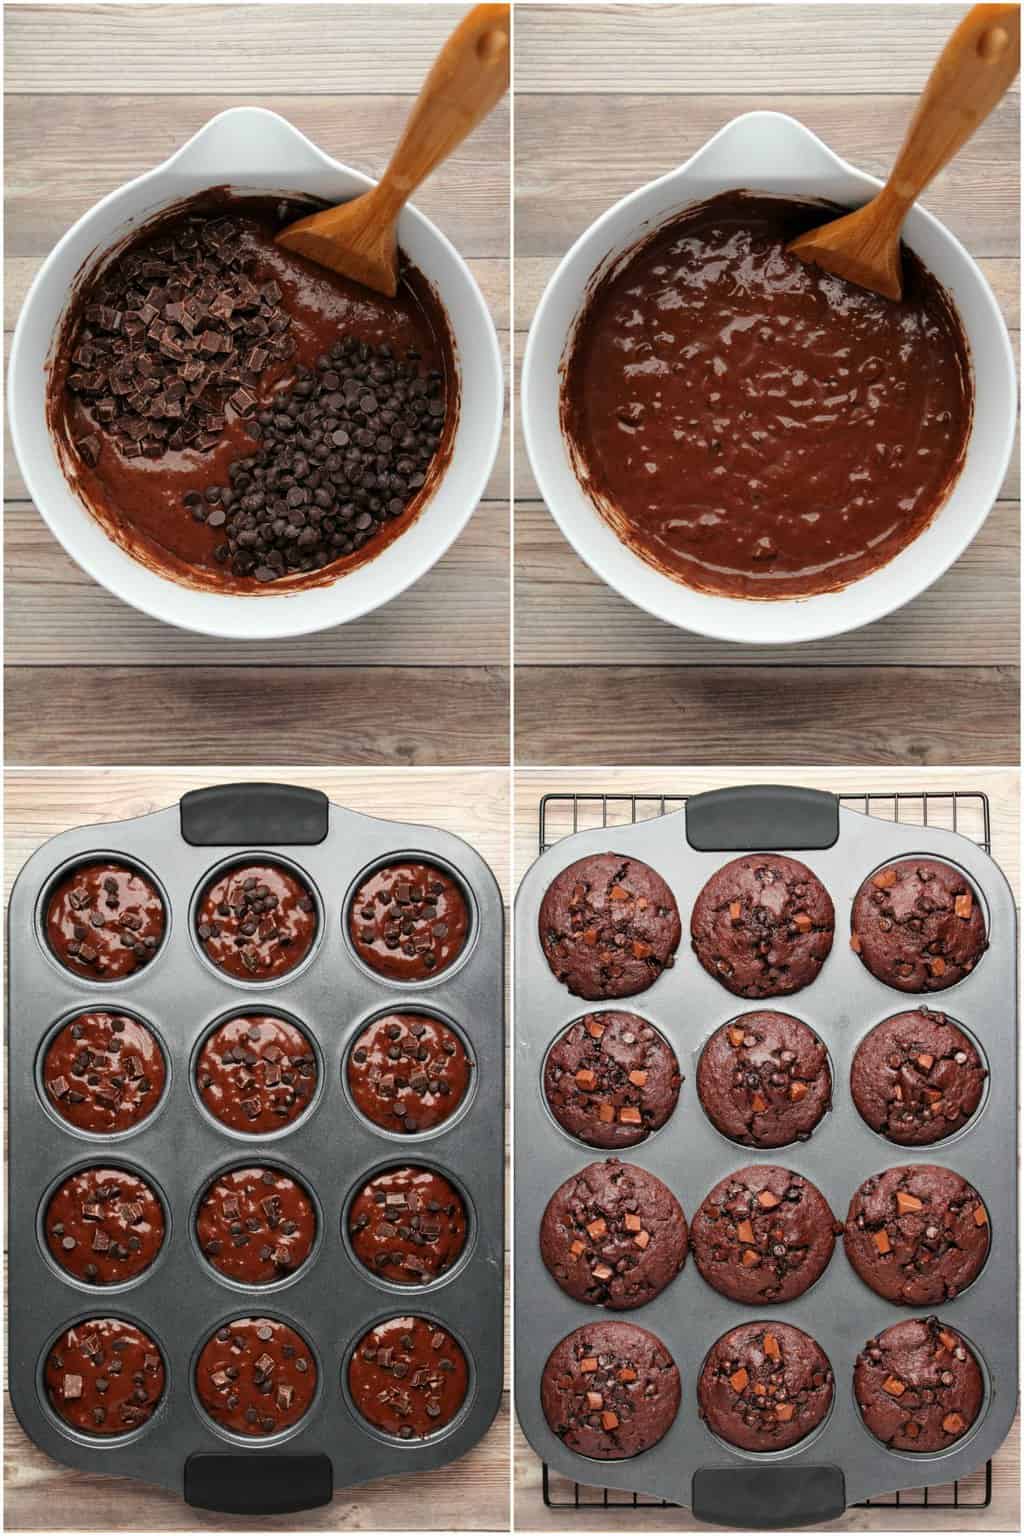 Steg for steg prosess foto collage av å lage dobbel sjokolade vegan sjokolade muffins. 